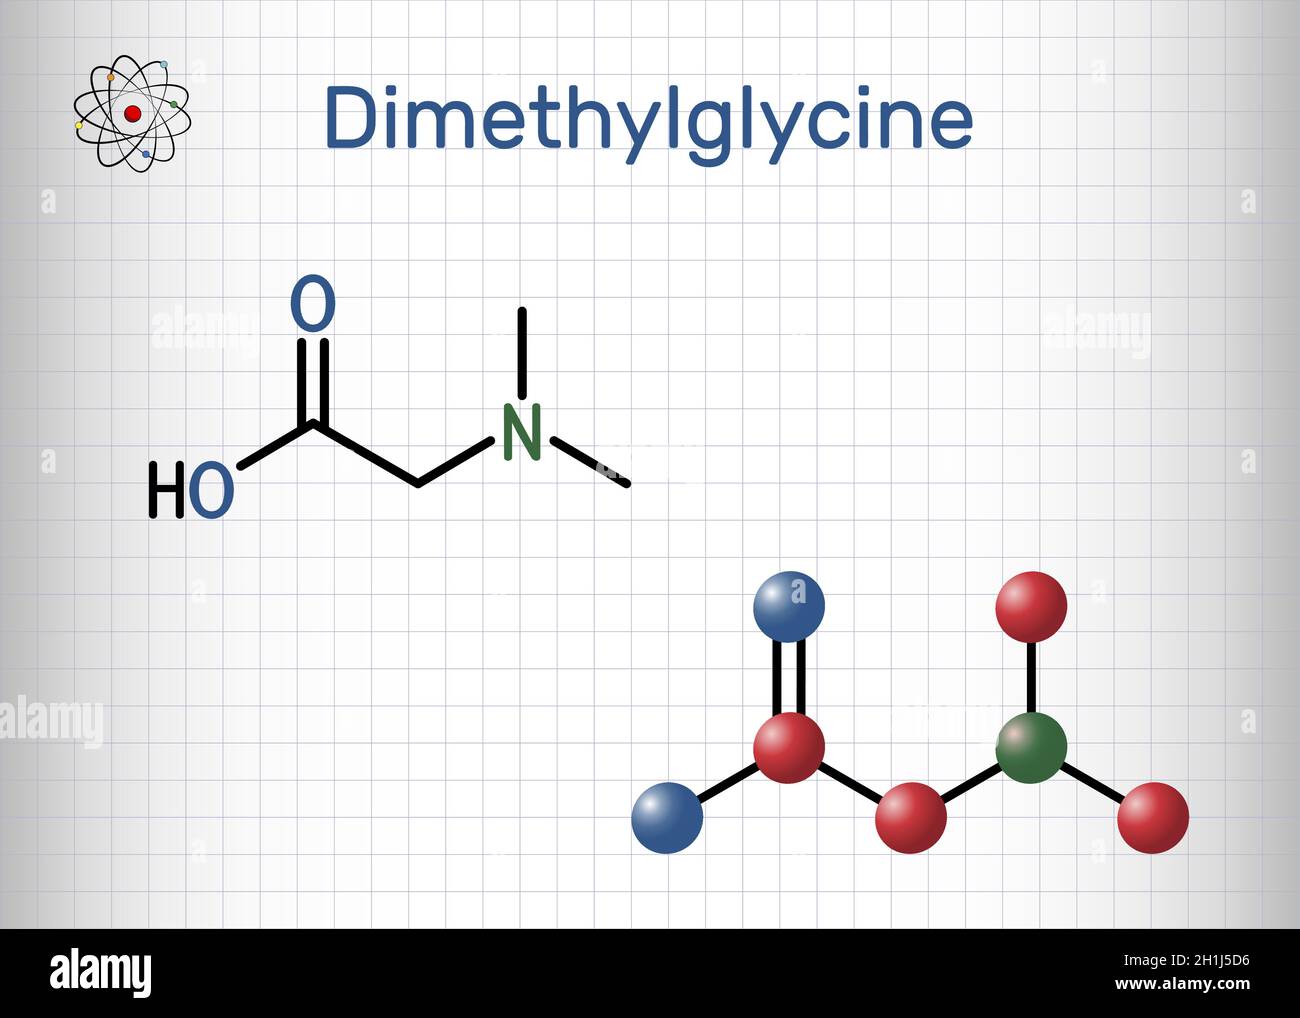 Dimethylglycin, DMG, Molekül. Es ist ein Derivat der Aminosäure Glycin. Strukturelle chemische Formel und Molekülmodell. Blatt Papier in einem Käfig. Stock Vektor